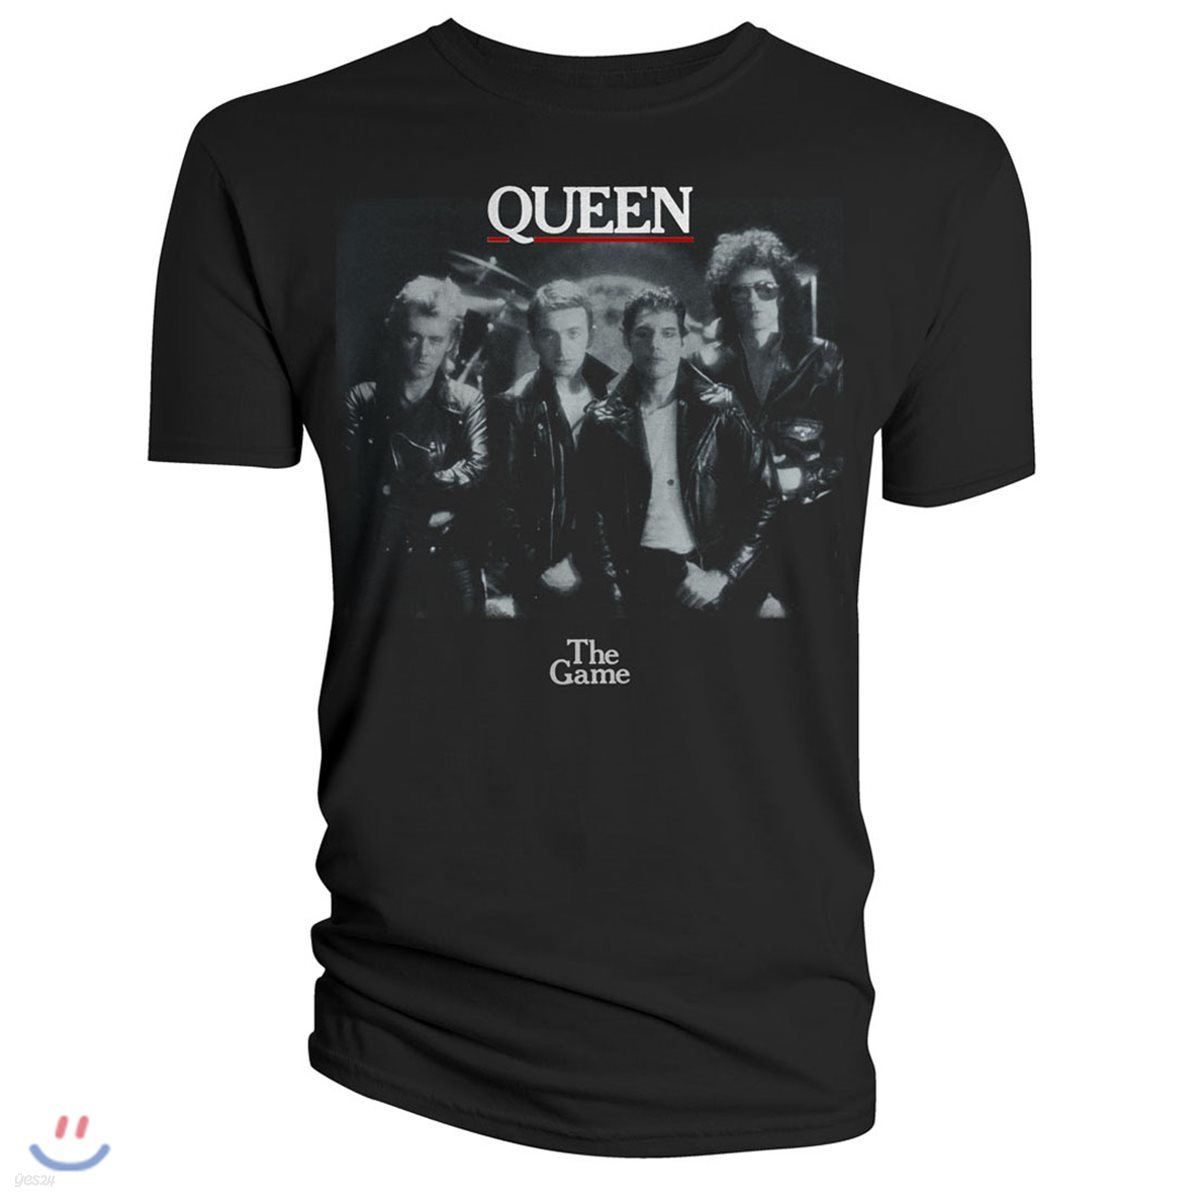 퀸 브라바도 The Game 티셔츠 [M사이즈] (Queen T-Shirt The Game)